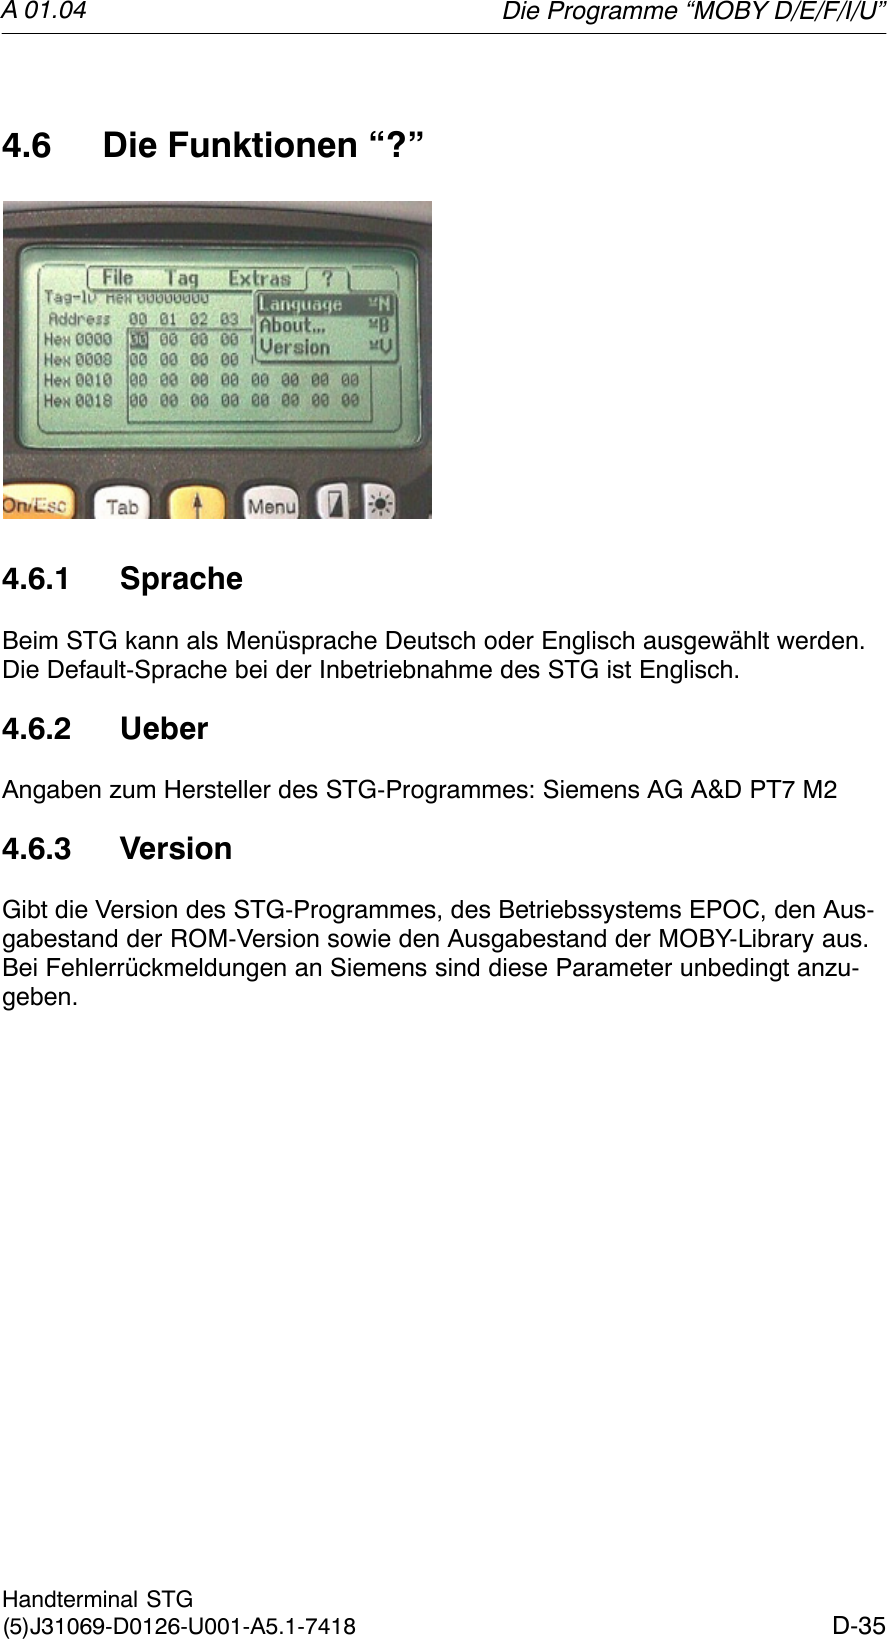 A 01.04D-35Handterminal STG(5)J31069-D0126-U001-A5.1-74184.6 Die Funktionen “?”4.6.1 SpracheBeim STG kann als Menüsprache Deutsch oder Englisch ausgewählt werden.Die Default-Sprache bei der Inbetriebnahme des STG ist Englisch.4.6.2 UeberAngaben zum Hersteller des STG-Programmes: Siemens AG A&amp;D PT7 M24.6.3 VersionGibt die Version des STG-Programmes, des Betriebssystems EPOC, den Aus-gabestand der ROM-Version sowie den Ausgabestand der MOBY-Library aus.Bei Fehlerrückmeldungen an Siemens sind diese Parameter unbedingt anzu-geben.Die Programme “MOBY D/E/F/I/U”